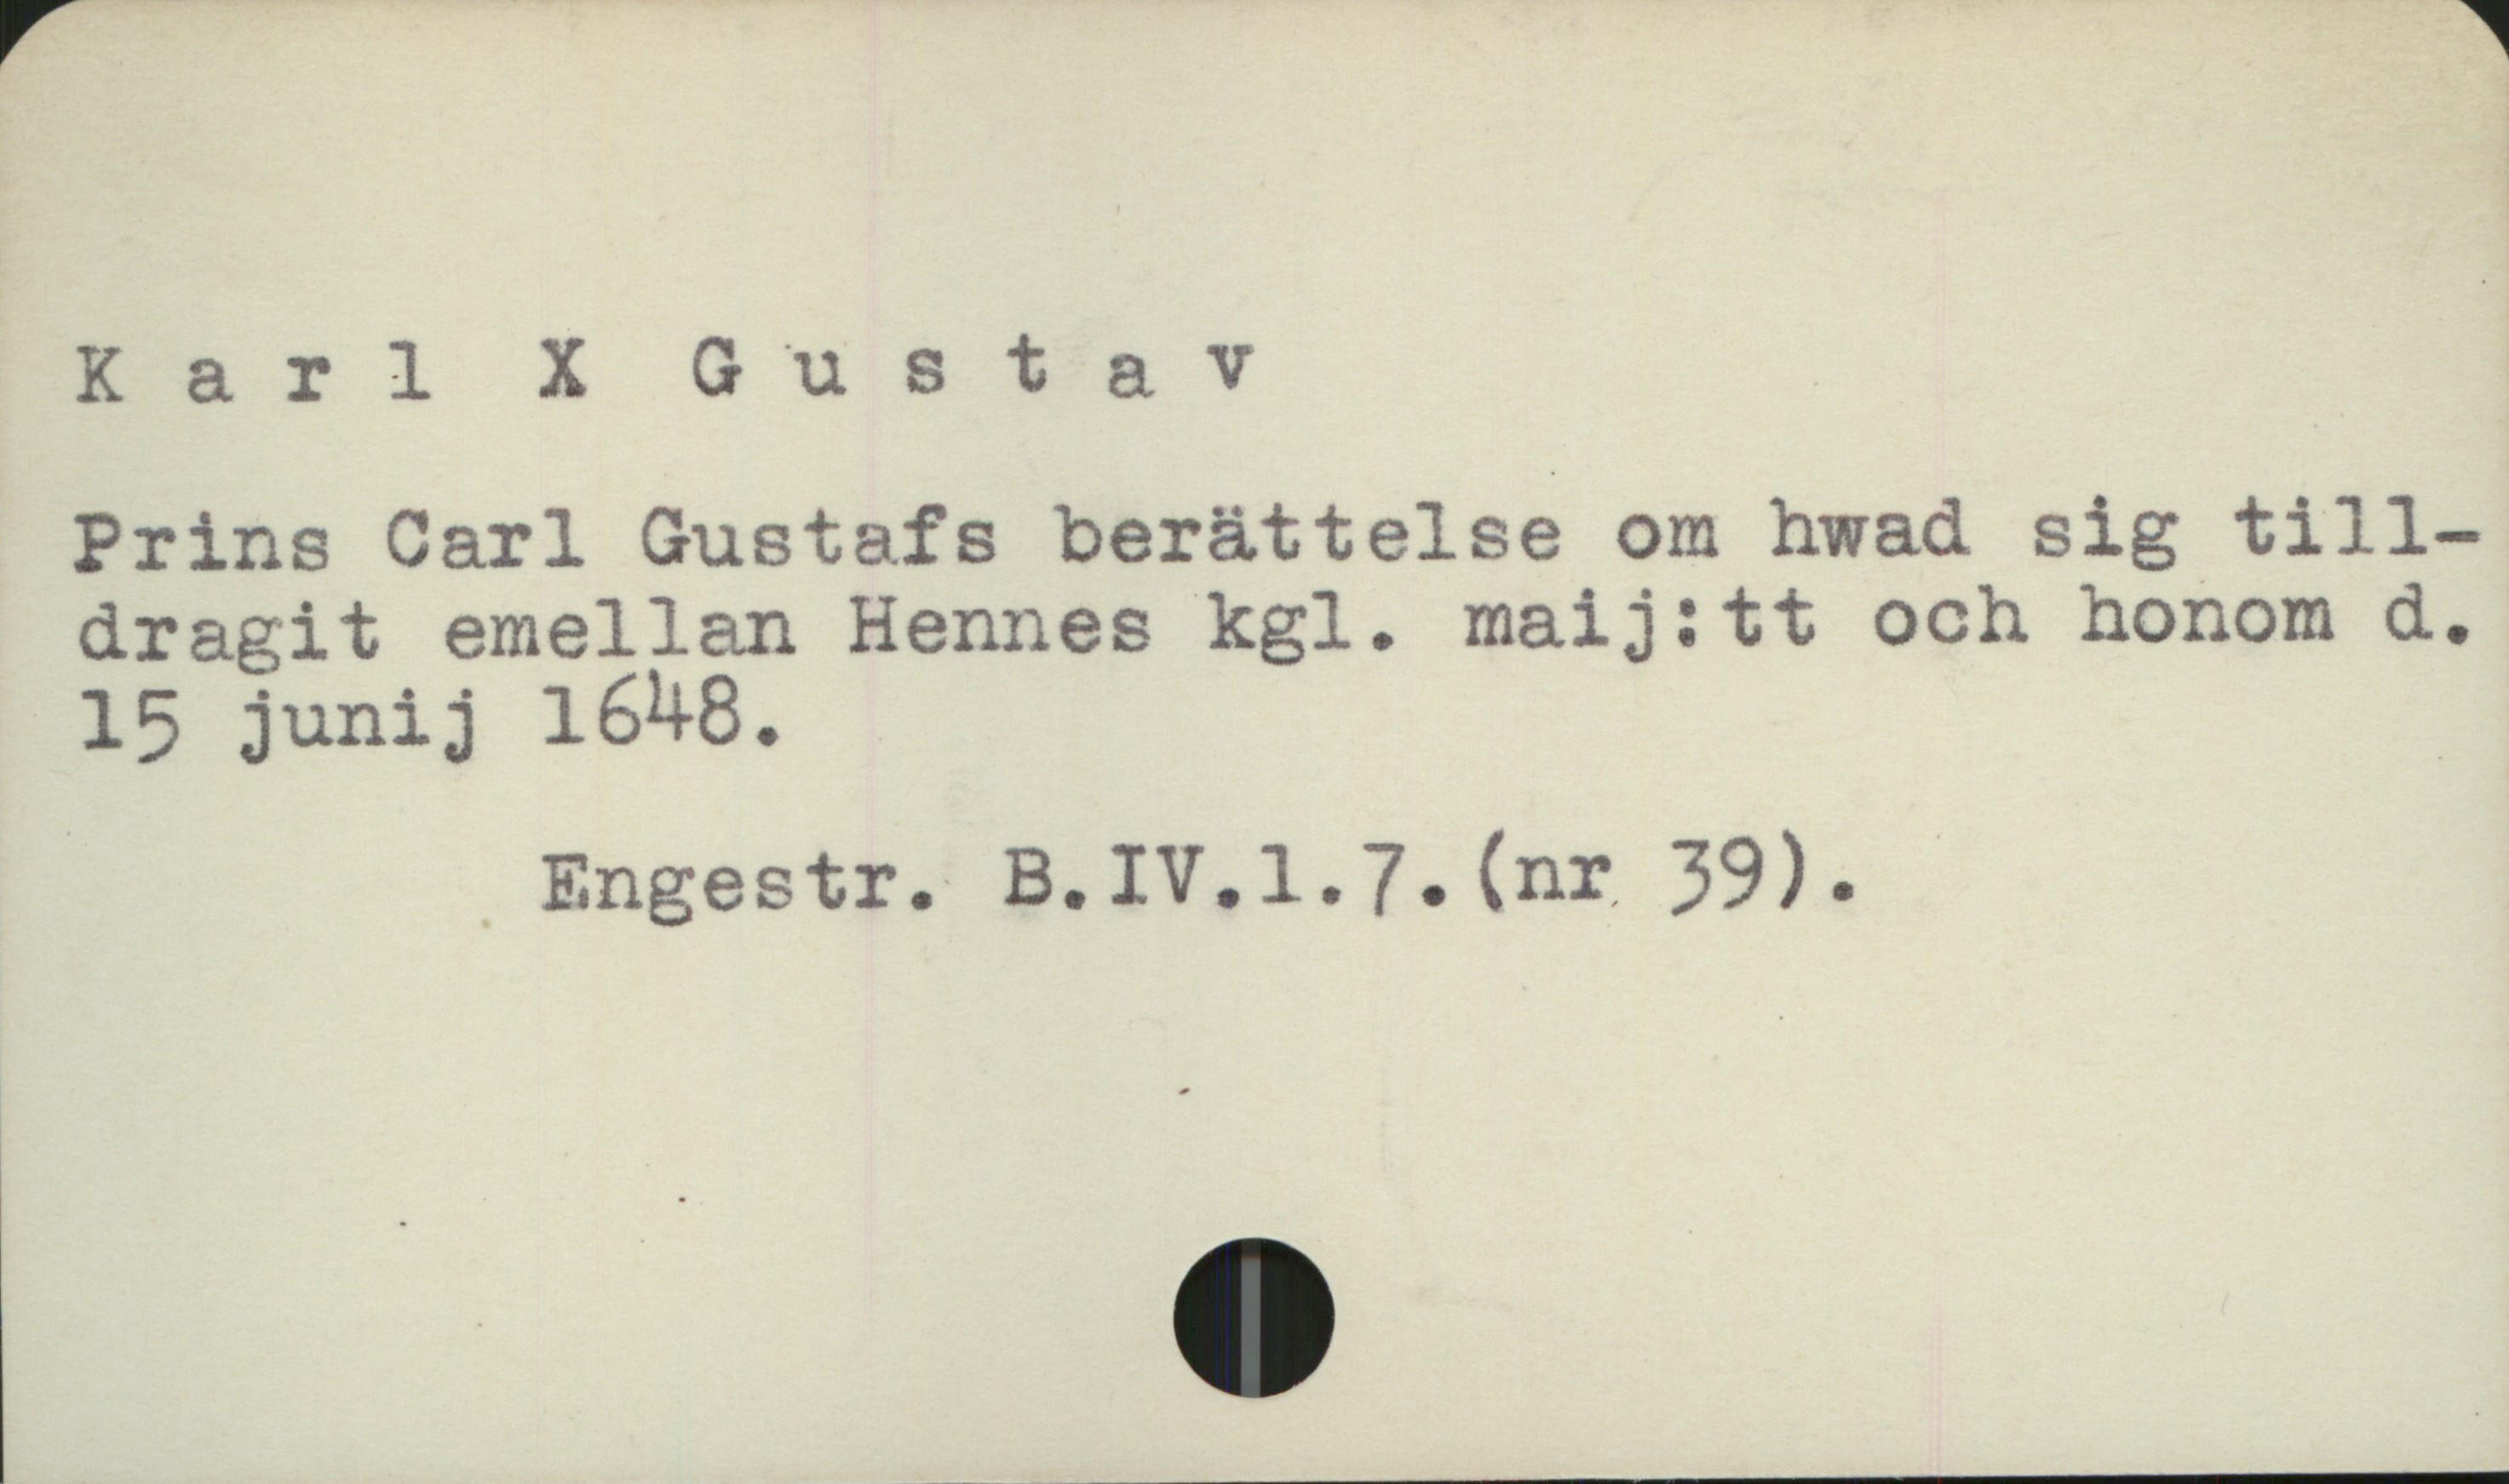  Karl X Gustav '
Prins Carl Gustafs berättelse om hwad sig till-
dragit emellan Hennes kgl. maij:tt och honom d.,
15 junij 1648.

" Engestr. B.IV.l1.7.(nr 39).

